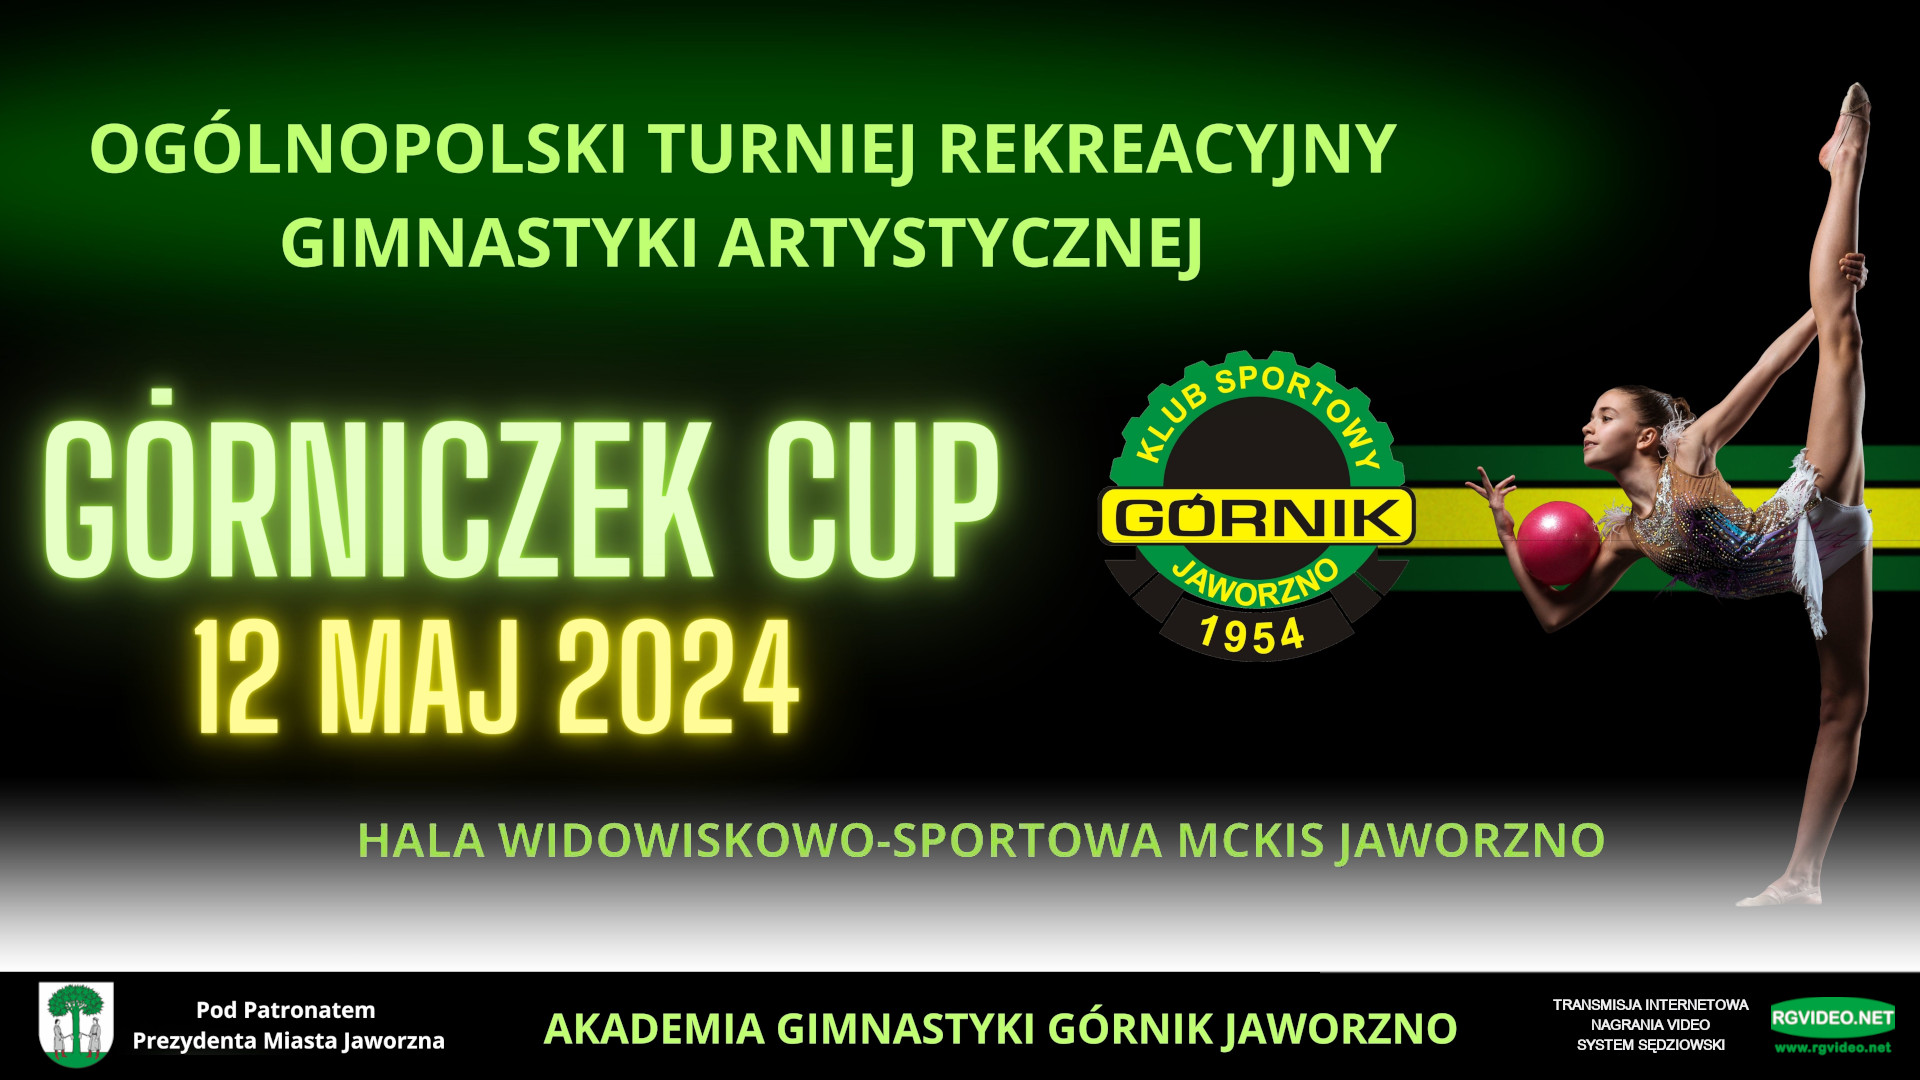 VIDEO - GORNICZEK CUP 2024